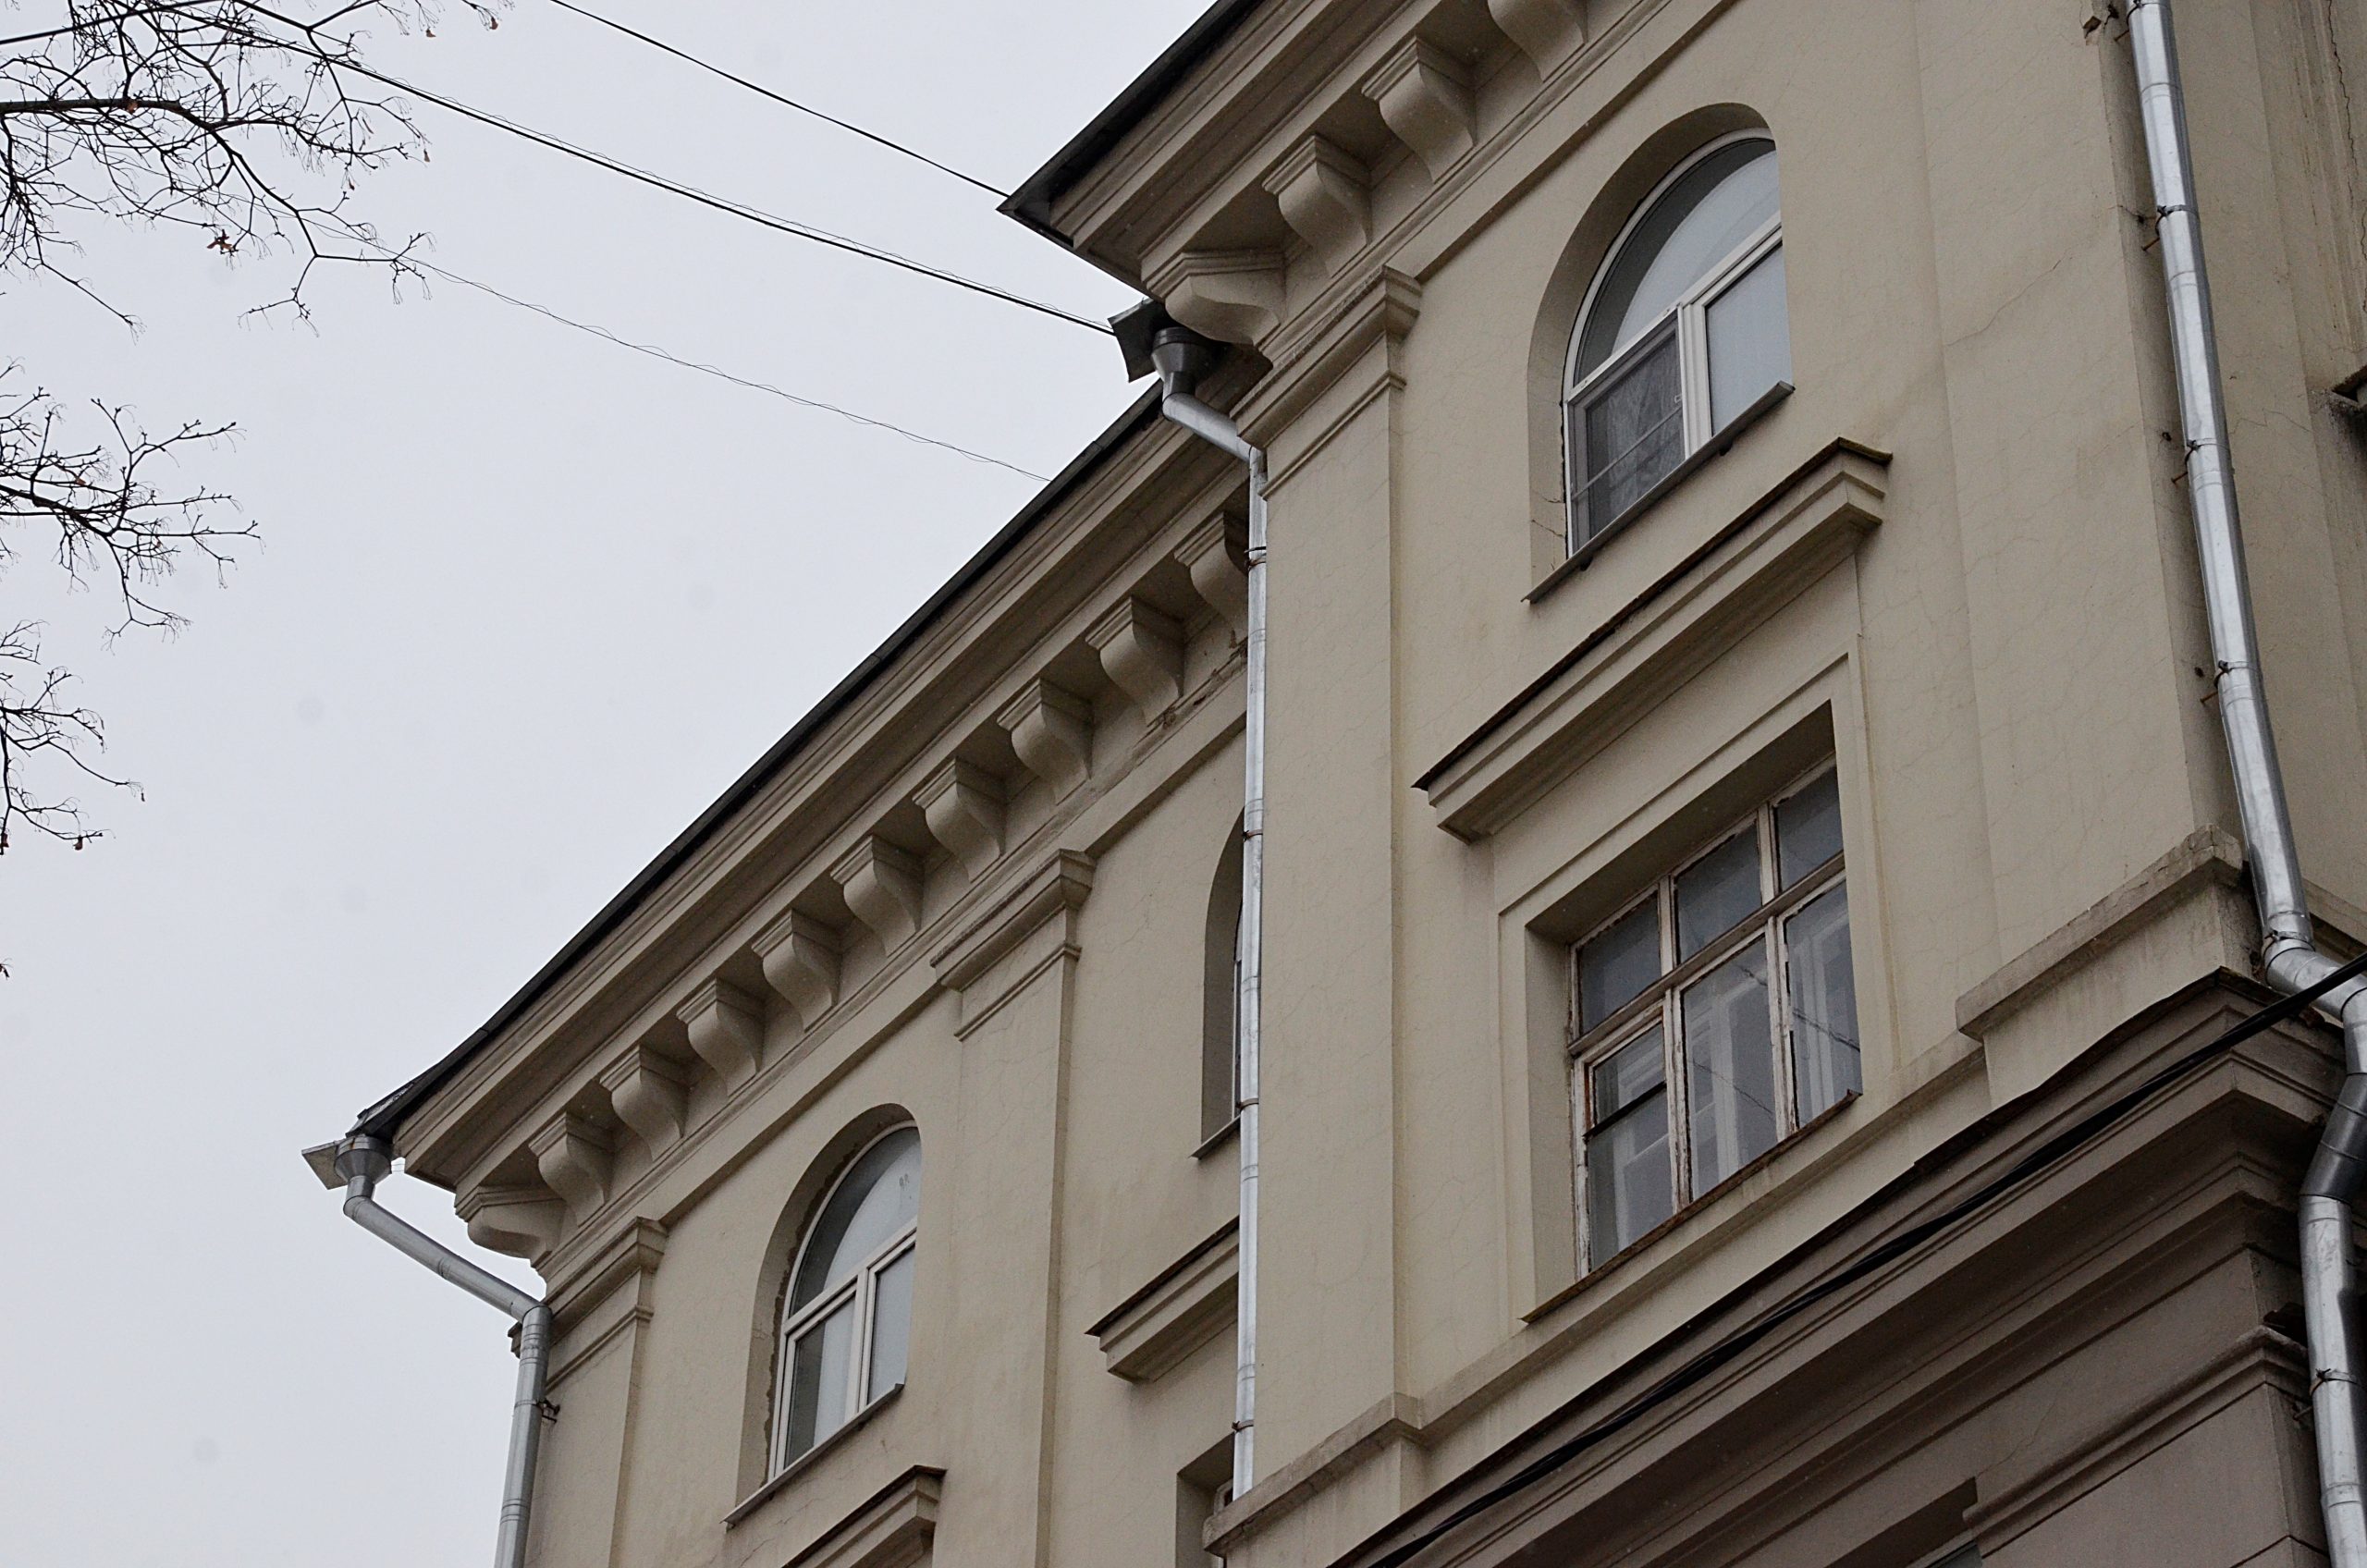 Шестиэтажный жилой дом возвели в 1938 году в стиле советского неоклассицизма. Фото: Анна Быкова, «Вечерняя Москва»